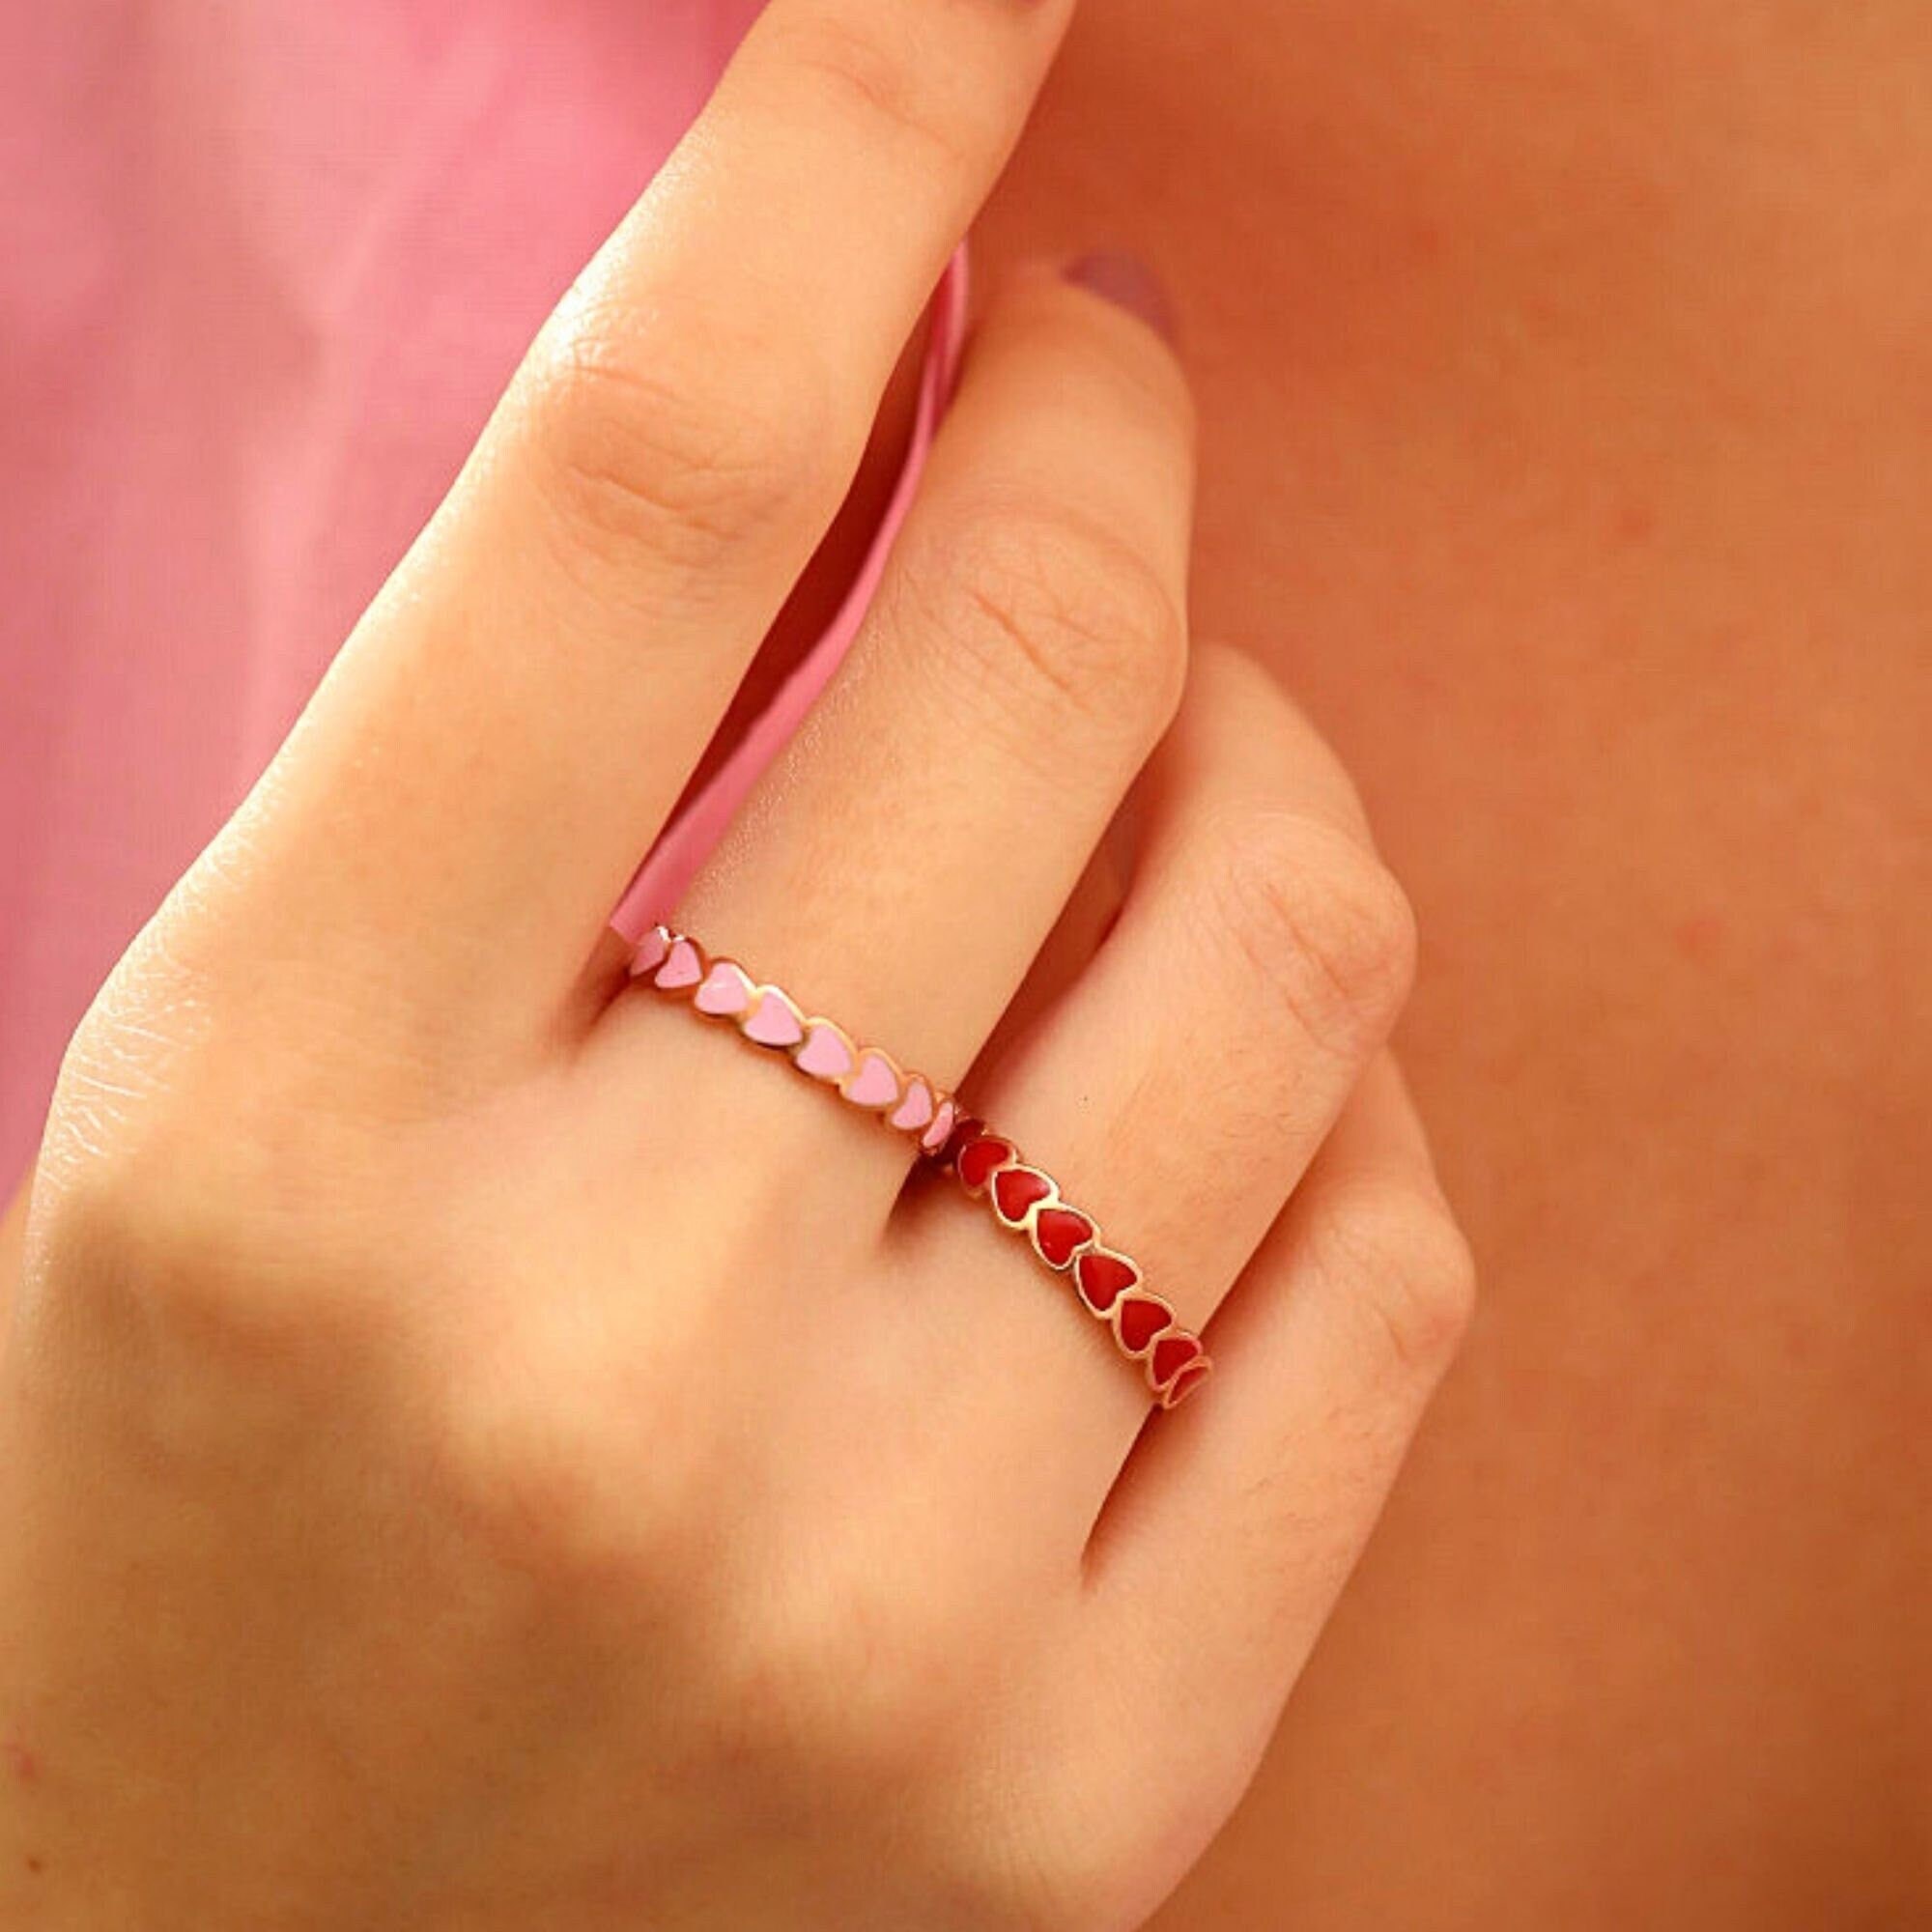 Pink Enamel Smiley Heart Ring, Christian Rings